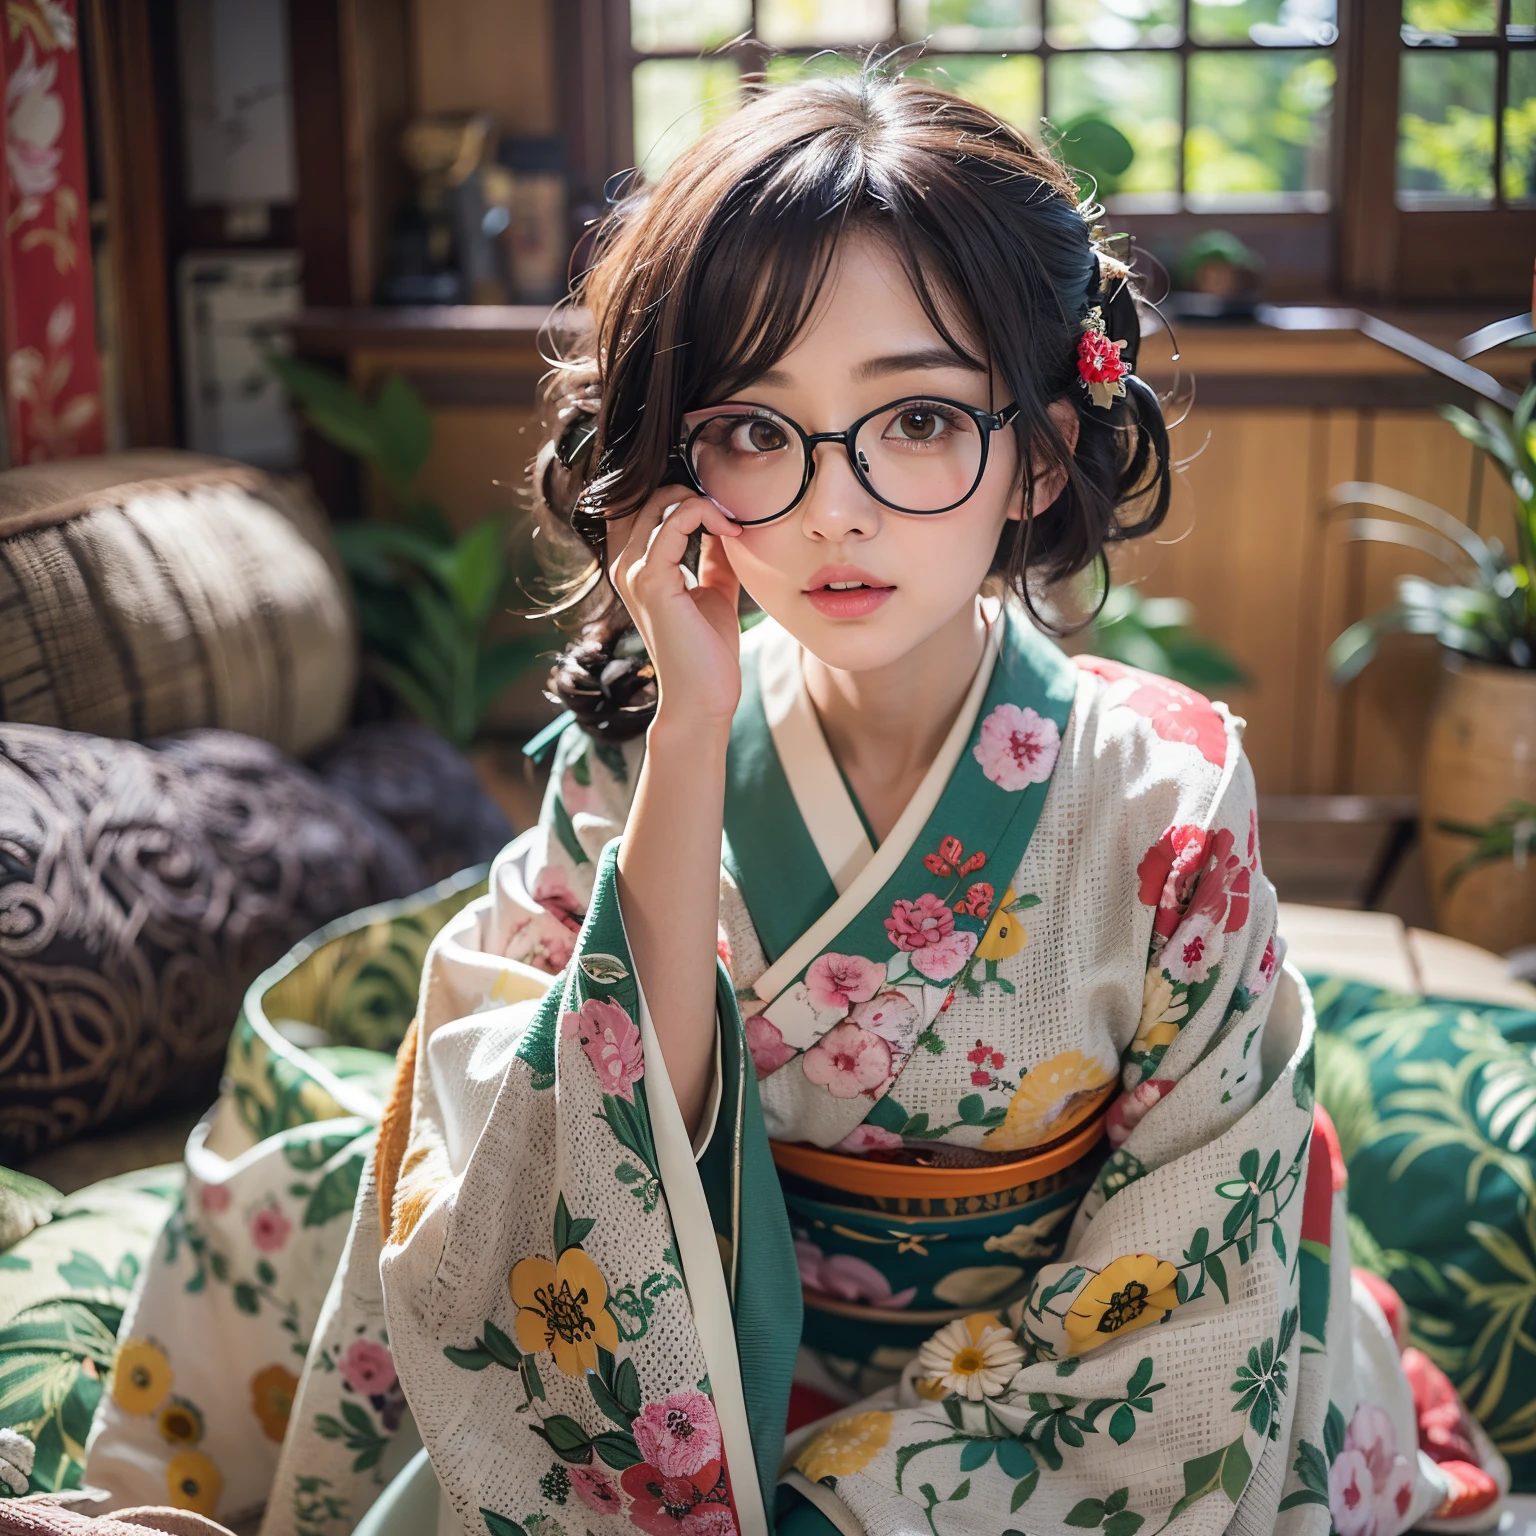 أفضل جودة, تحفة, فائقة الدقة, (واقعية:1.4), الصورة الخام, للغاية-التفاصيل, التشريح المثالي, 1فتاة, النموذج الياباني الأكثر شعبية, يرتدي الكيمونو الياباني ونظارات بتصميم لطيف, الجلوس SEIZA باللغة اليابانية التقليدية,غرفة, يميل إلى الأمام, وجه جميل للغاية مثل أشهر عارضة أزياء يابانية, عيون دائرة سوداء كبيرة جميلة بشكل مثير للدهشة, جلود واقعية جميلة جدا, جميلة جدا ذات شعر أسود قصير, الصدور الكبيرة جميلة جدا, انقسام جميل جدا, الكيمونو الياباني التفصيلي, نظارات مفصلة بتصميم لطيف, وجه جميل مفصل, عيون مفصلة, جلود واقعية مفصلة, مفصلة ذات شعر أسود قصير, الصدور الكبيرة مفصلة, انقسام مفصل, detailed traditional Japanese غرفة